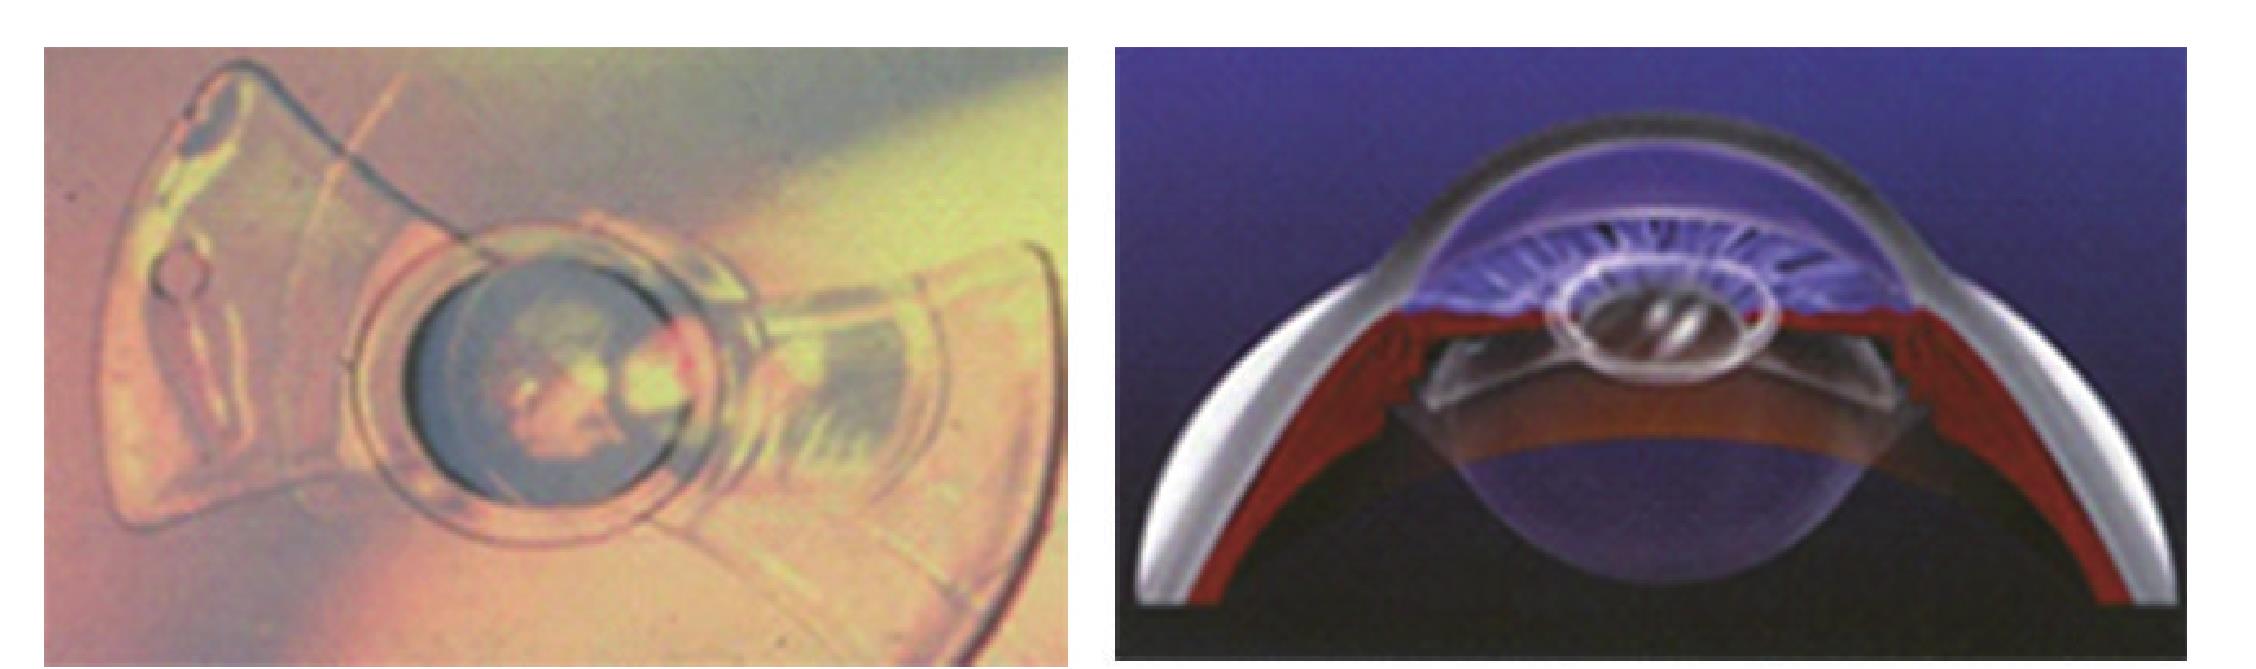 1 后房型有晶状体眼人工晶体的发展史及最新进展